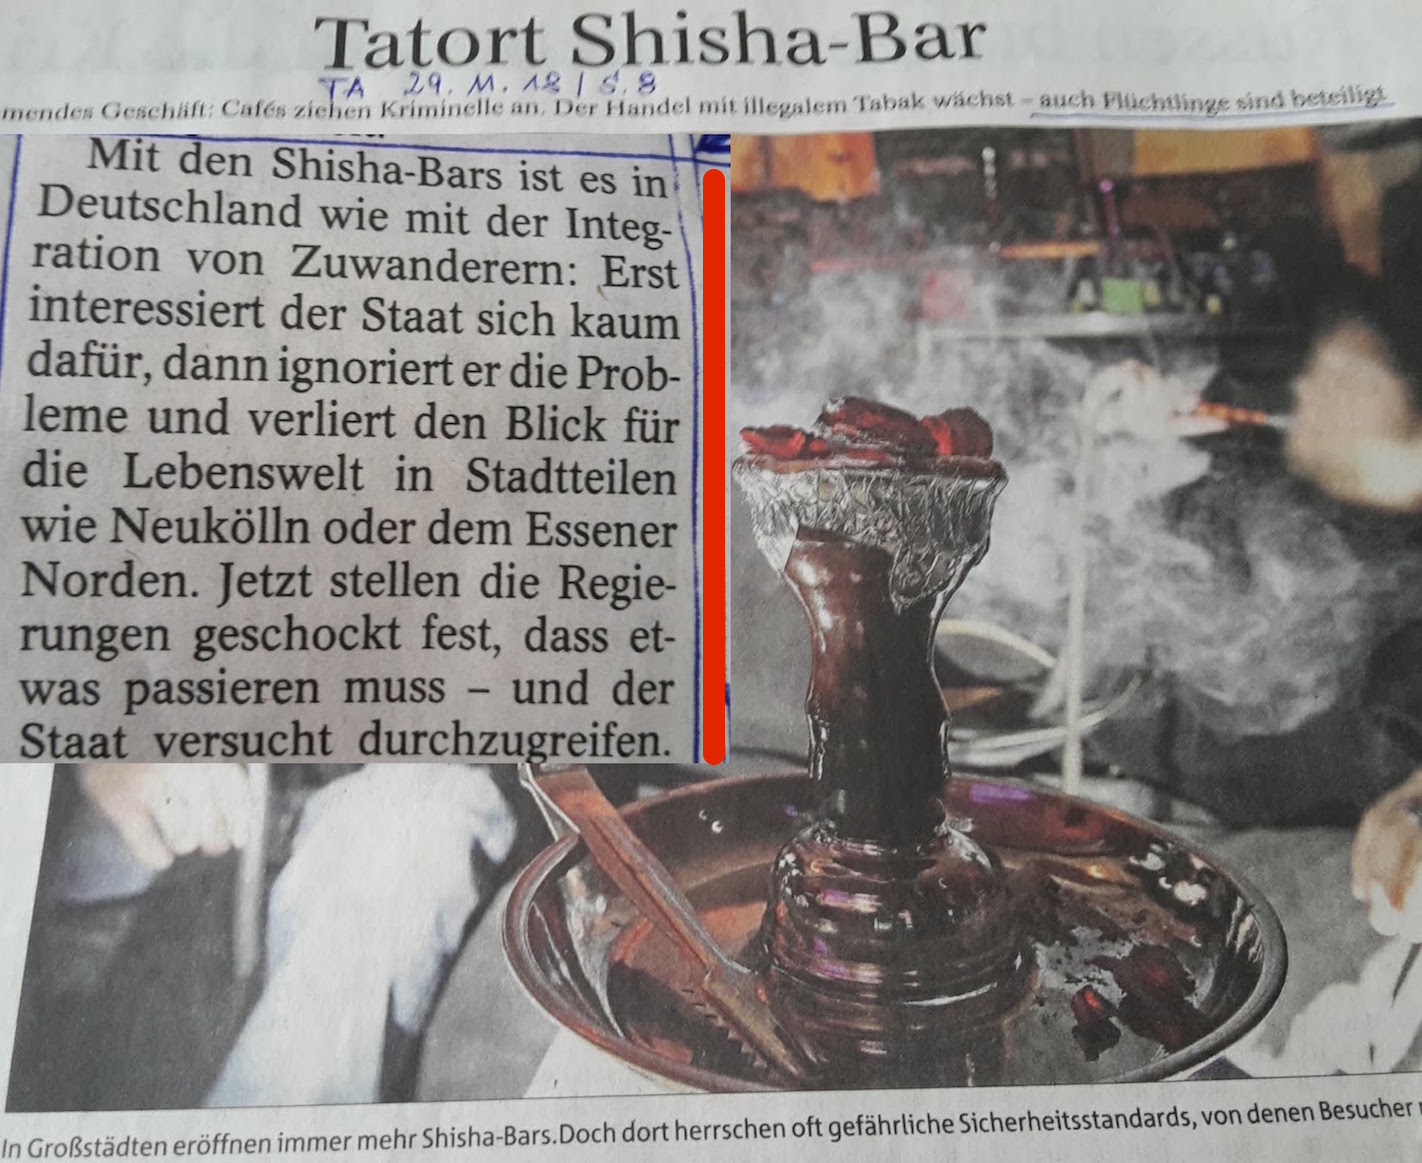 SchlagZeile Shisha-Bar _ Tatort 29.11.18